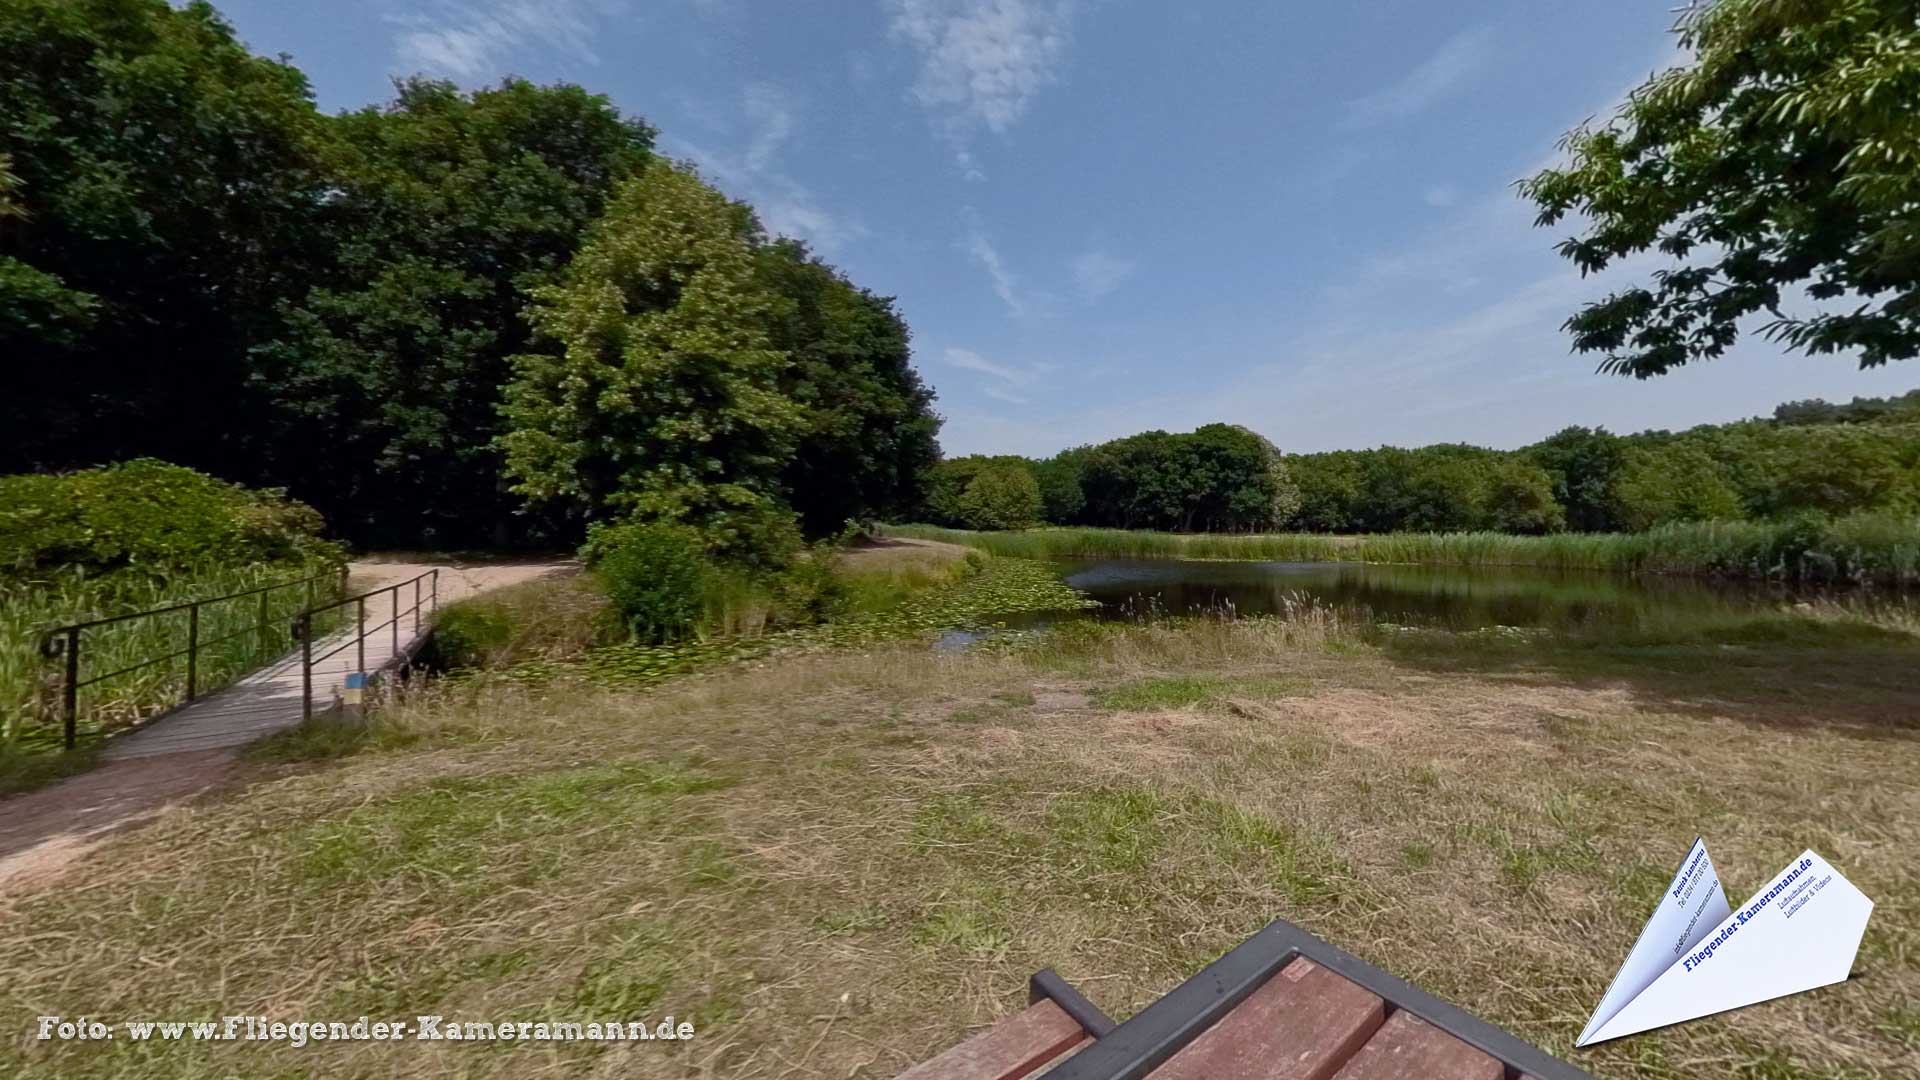 Beschermd landschapsgebied "De Manteling" en Kasteel Westhove in Oostkapelle (NL) - 360°-Panorama